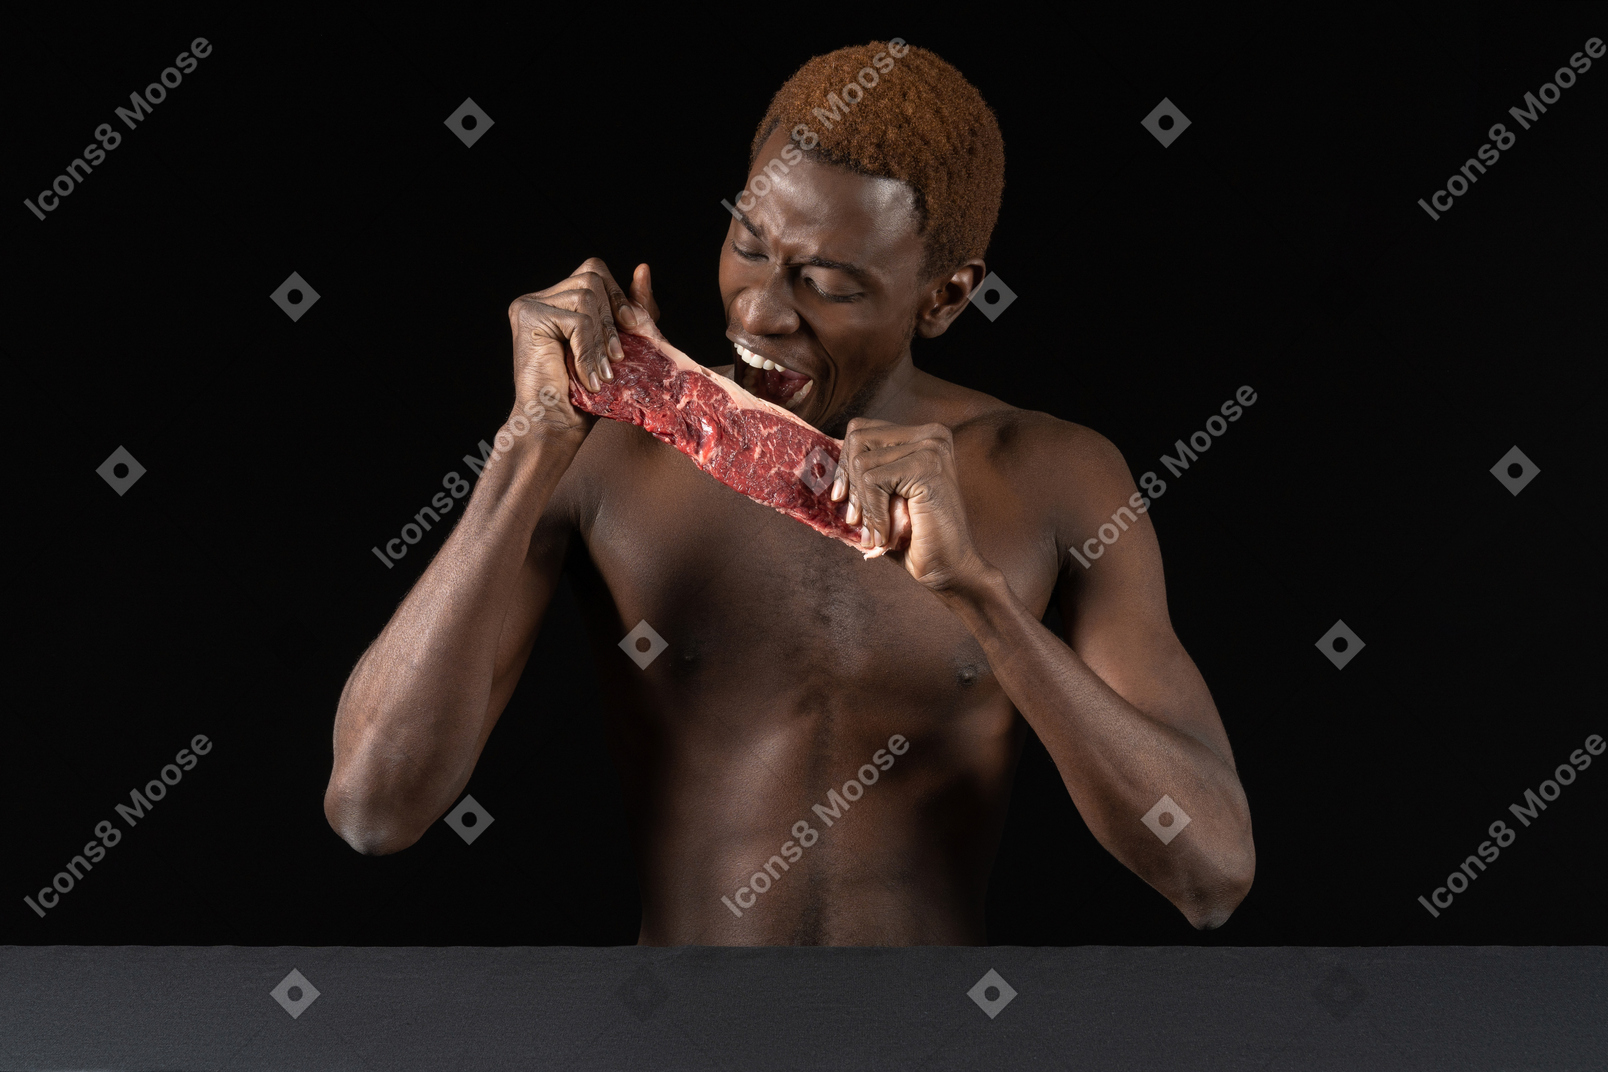 Vista frontal de um jovem afro mordendo uma fatia de carne